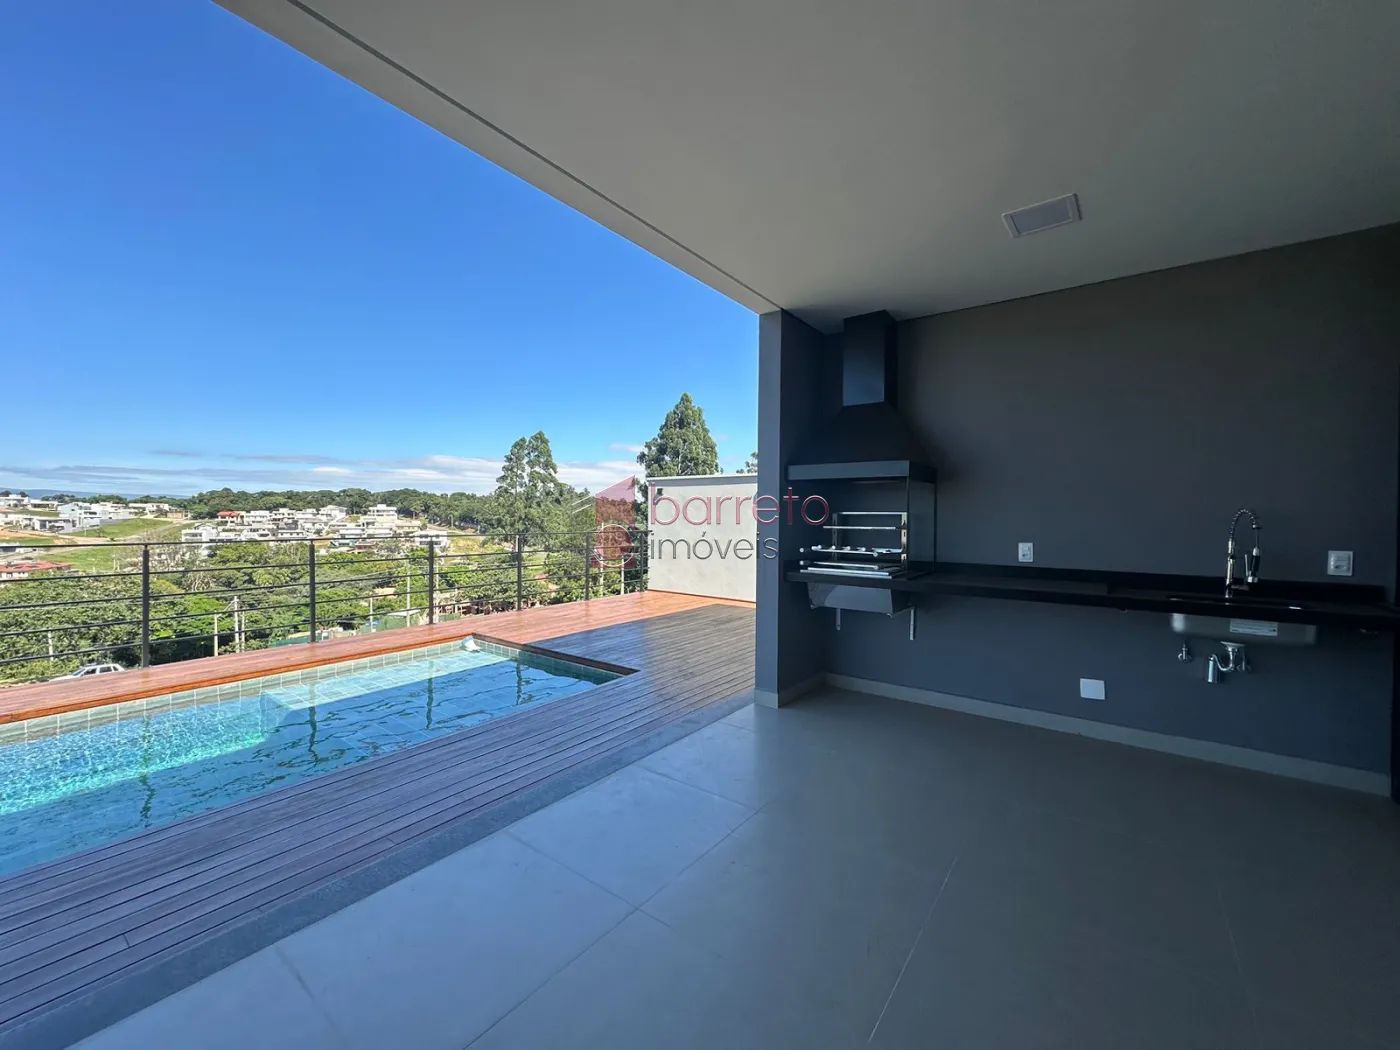 Comprar Casa / Condomínio em Louveira R$ 1.950.000,00 - Foto 15